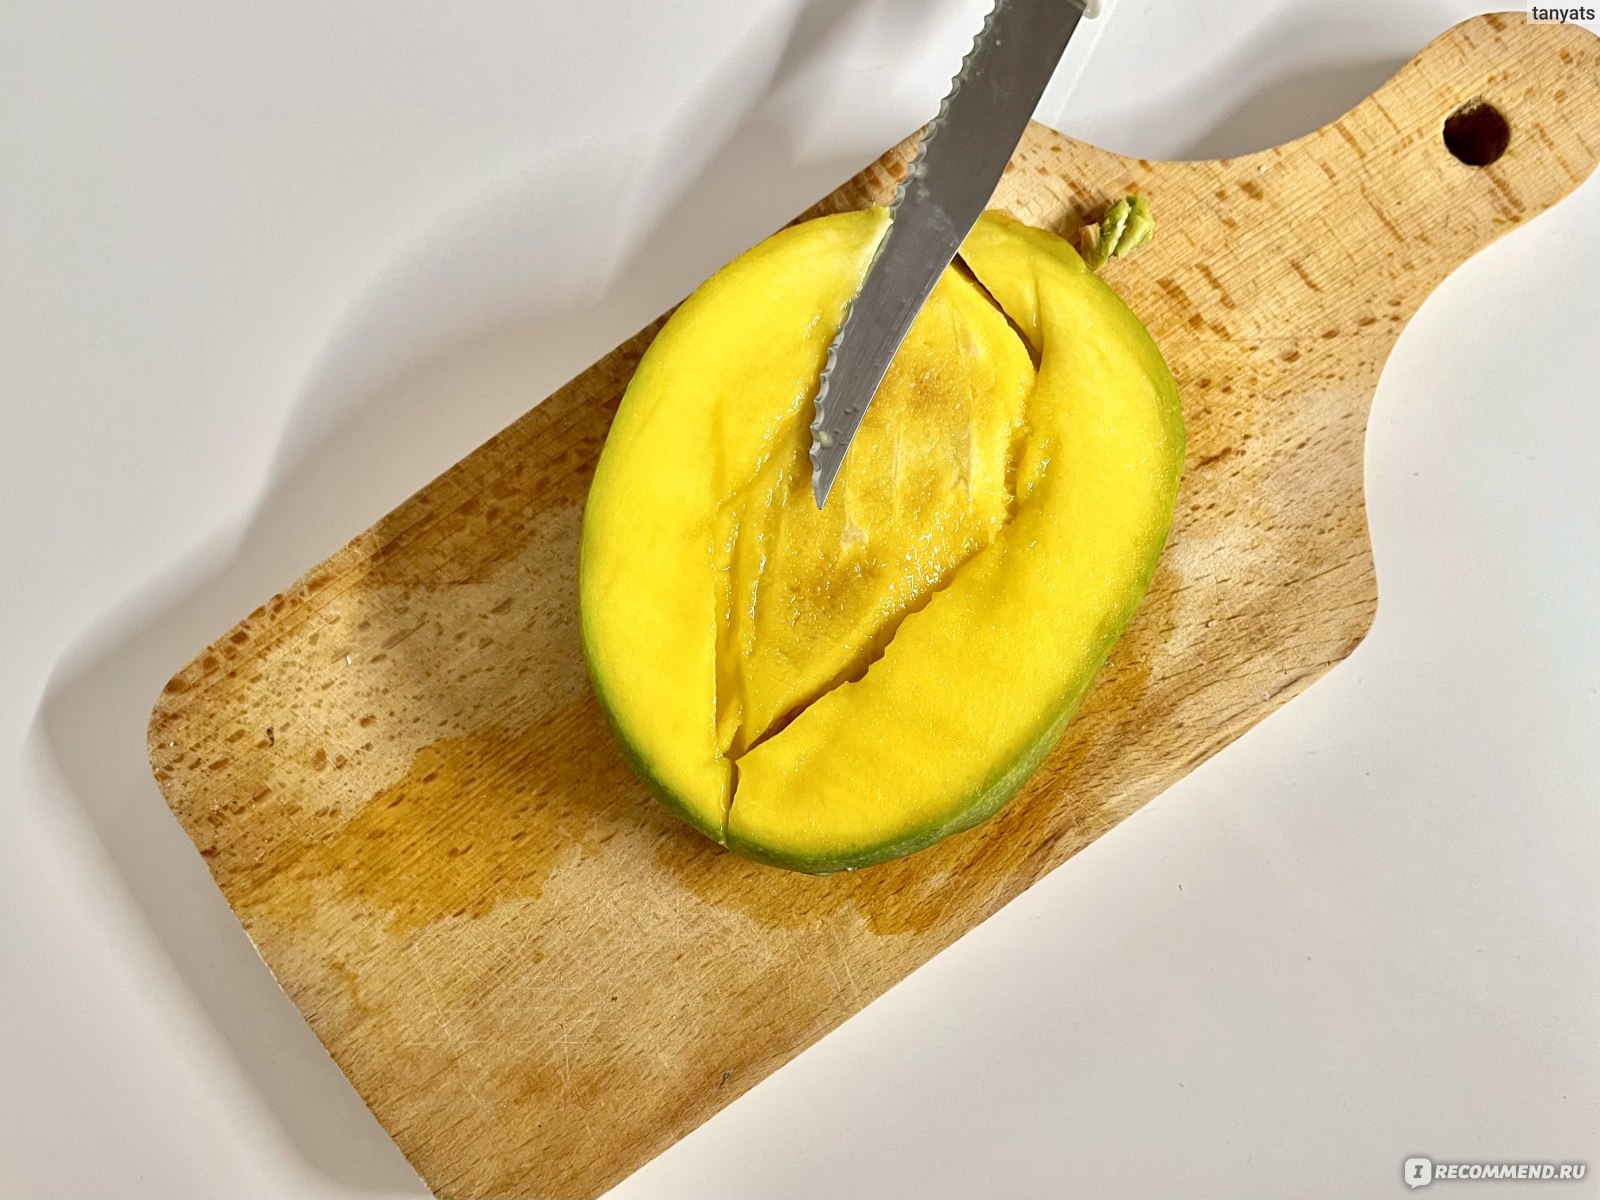 Как красиво порезать на стол манго